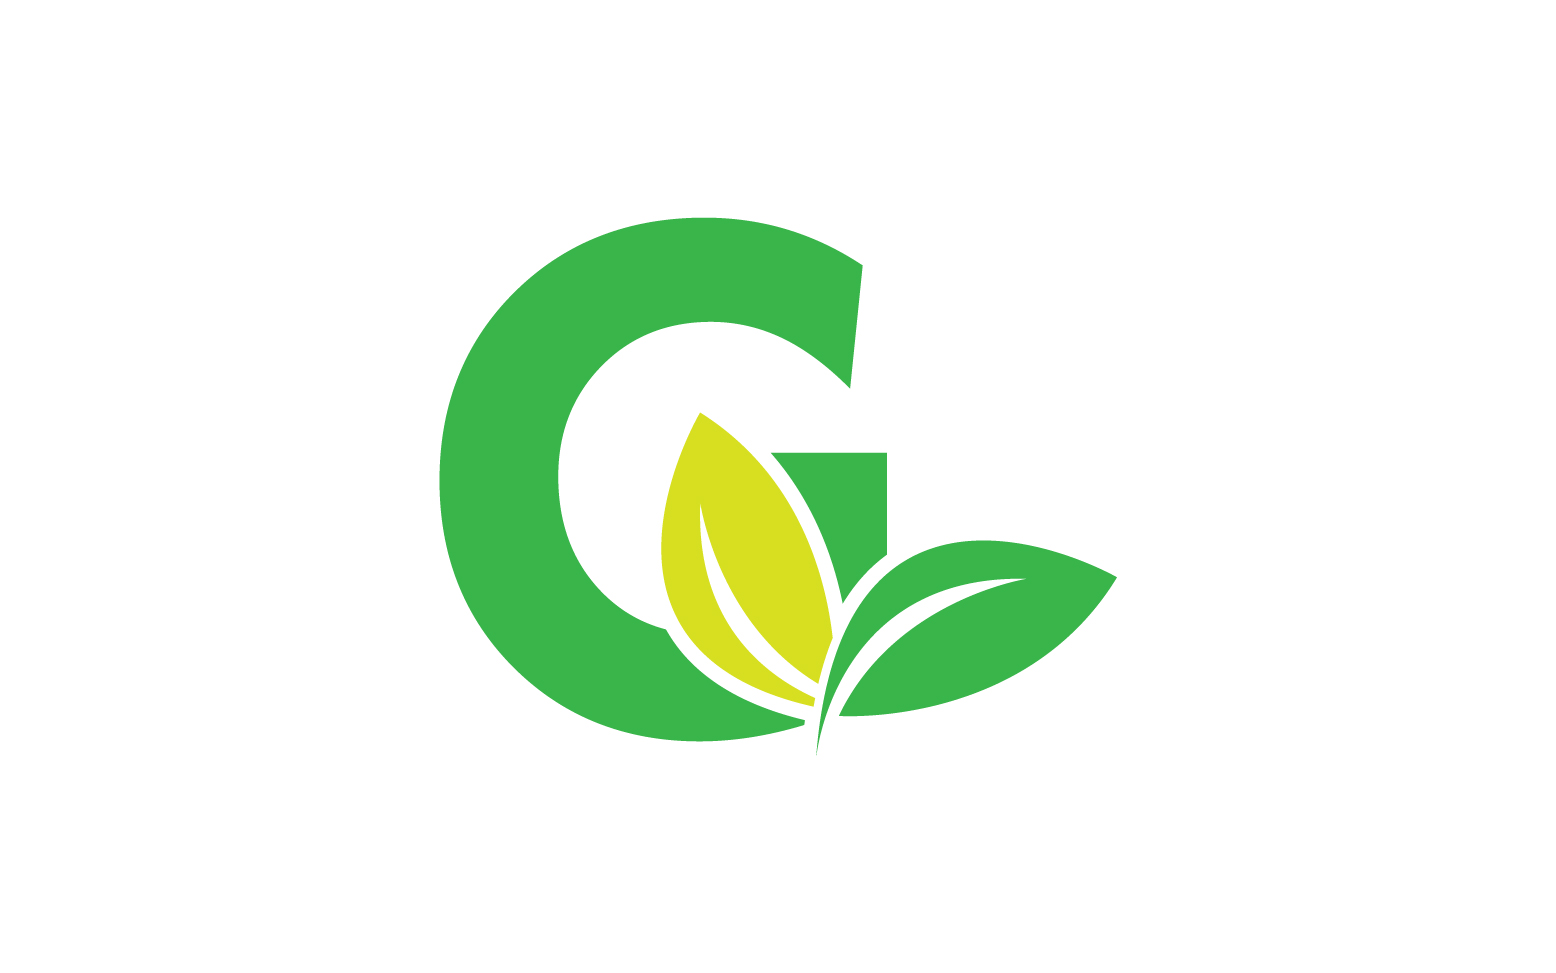 G letter leaf green logo icon version v17